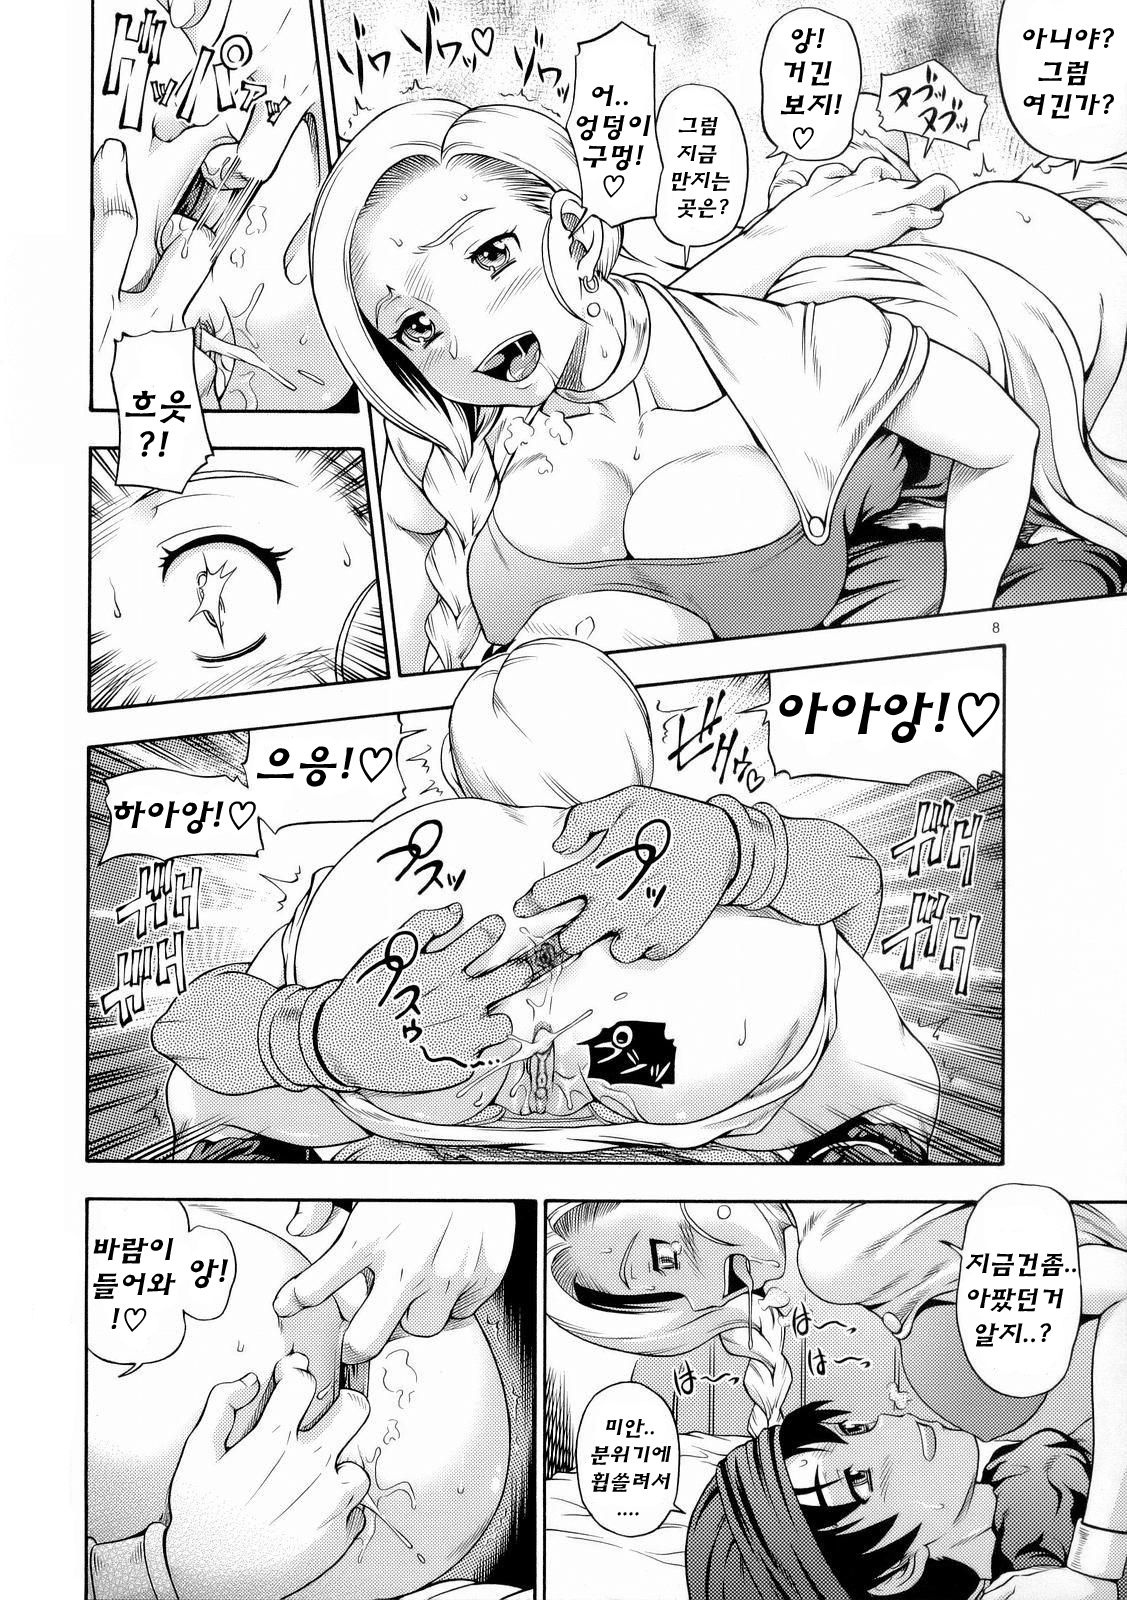 (SC34) [Kensoh Ogawa (Fukudahda)] Bianca Milk 5.1 (Dragon Quest V) (korean) 5